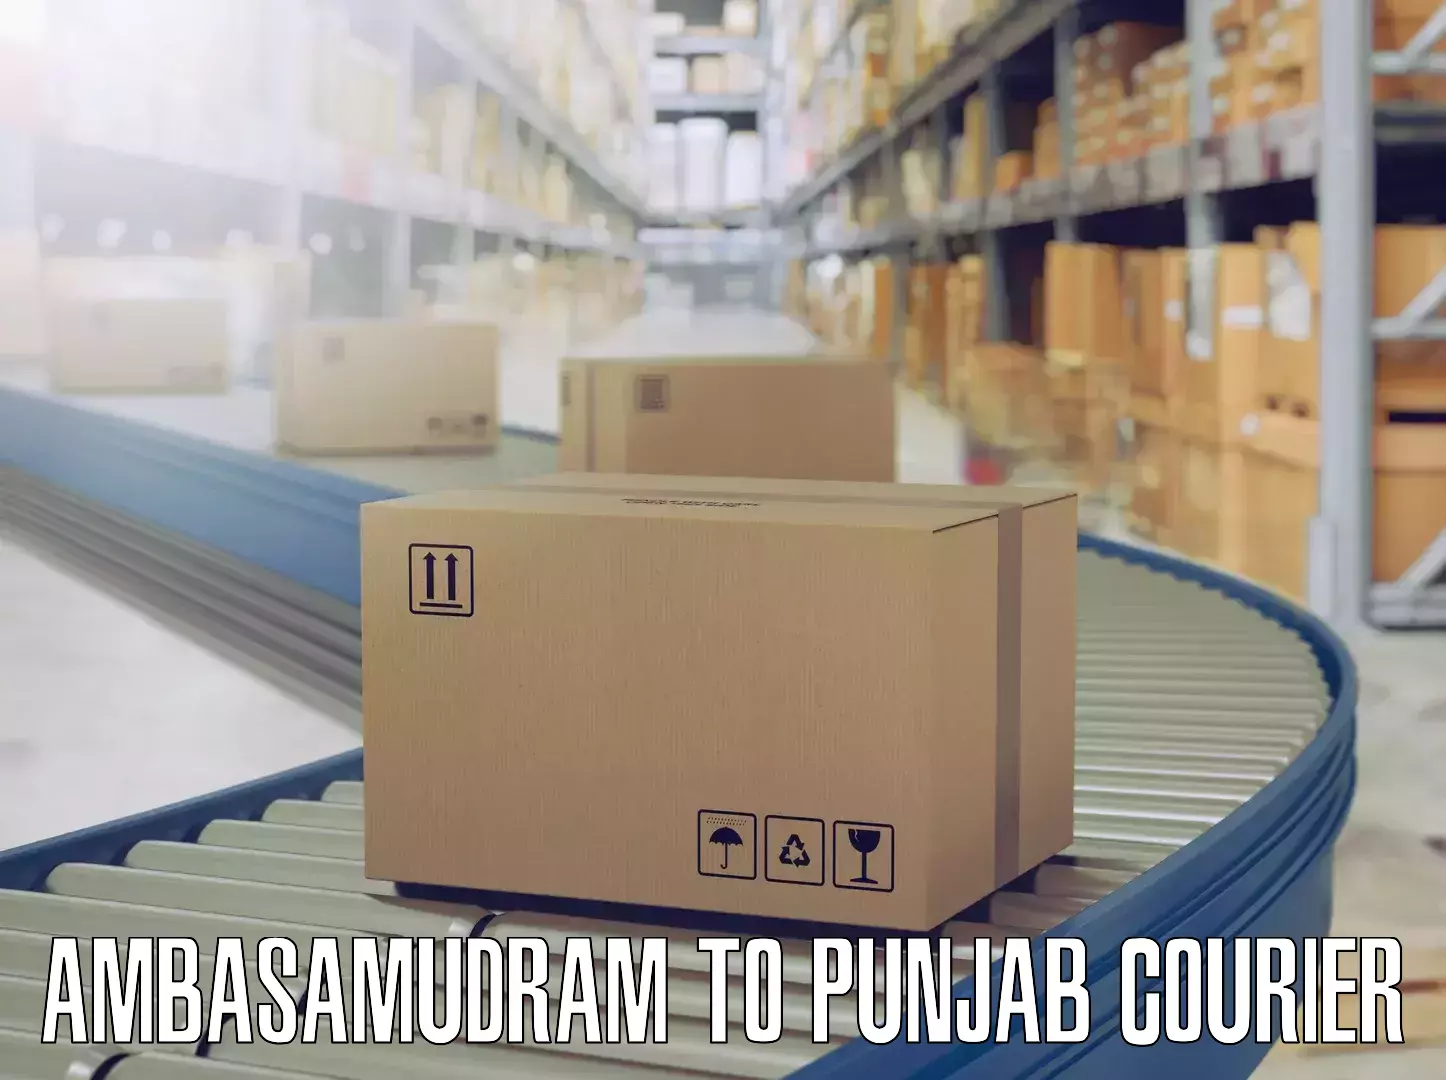 Home goods transport Ambasamudram to Punjab